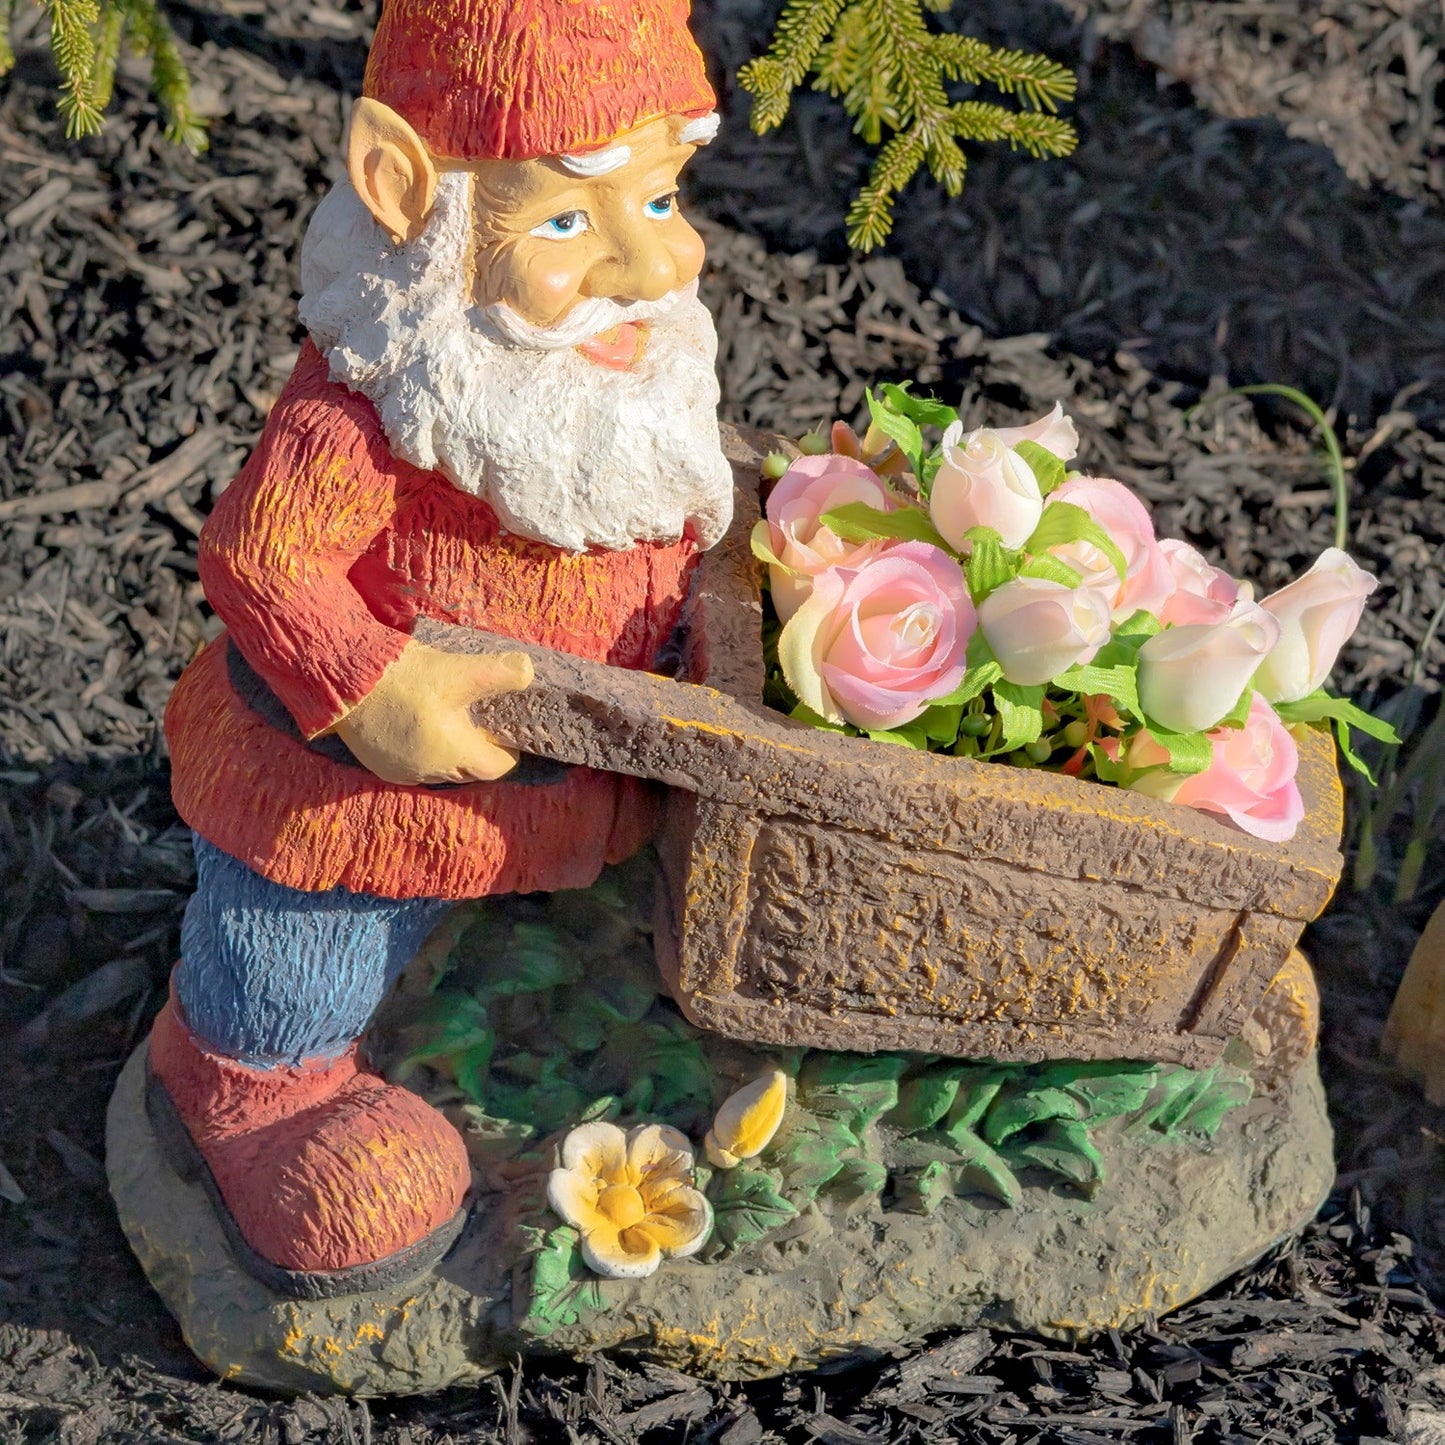 17" Tall Spring Gnome Garden Statue with Wheelbarrow